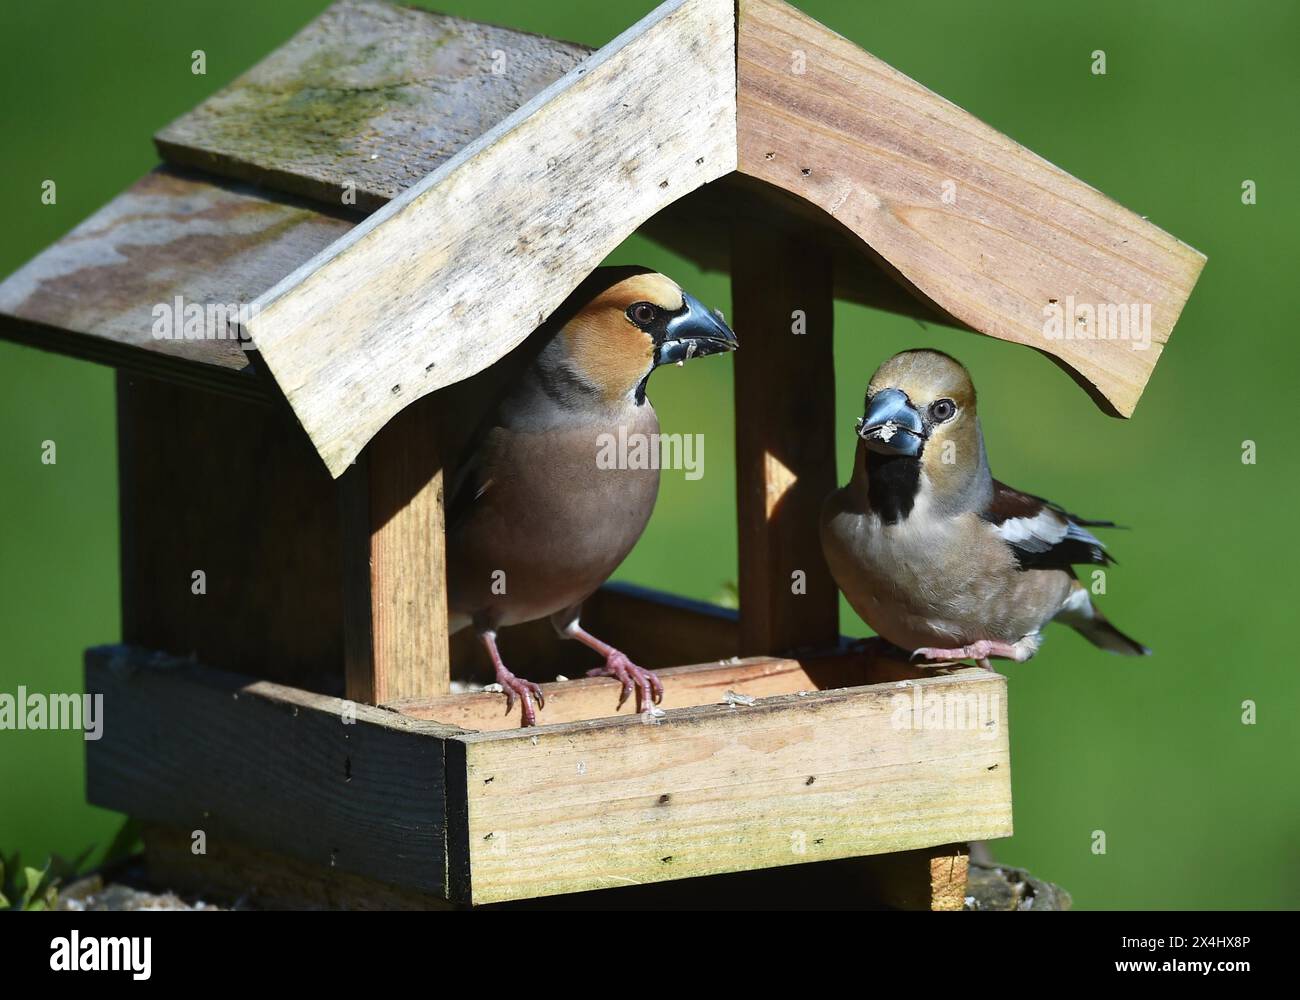 Hawfinch (Coccothraustes coccothraustes) pendant l'accouplement de l'alimentation dans la maison d'oiseaux au printemps Banque D'Images